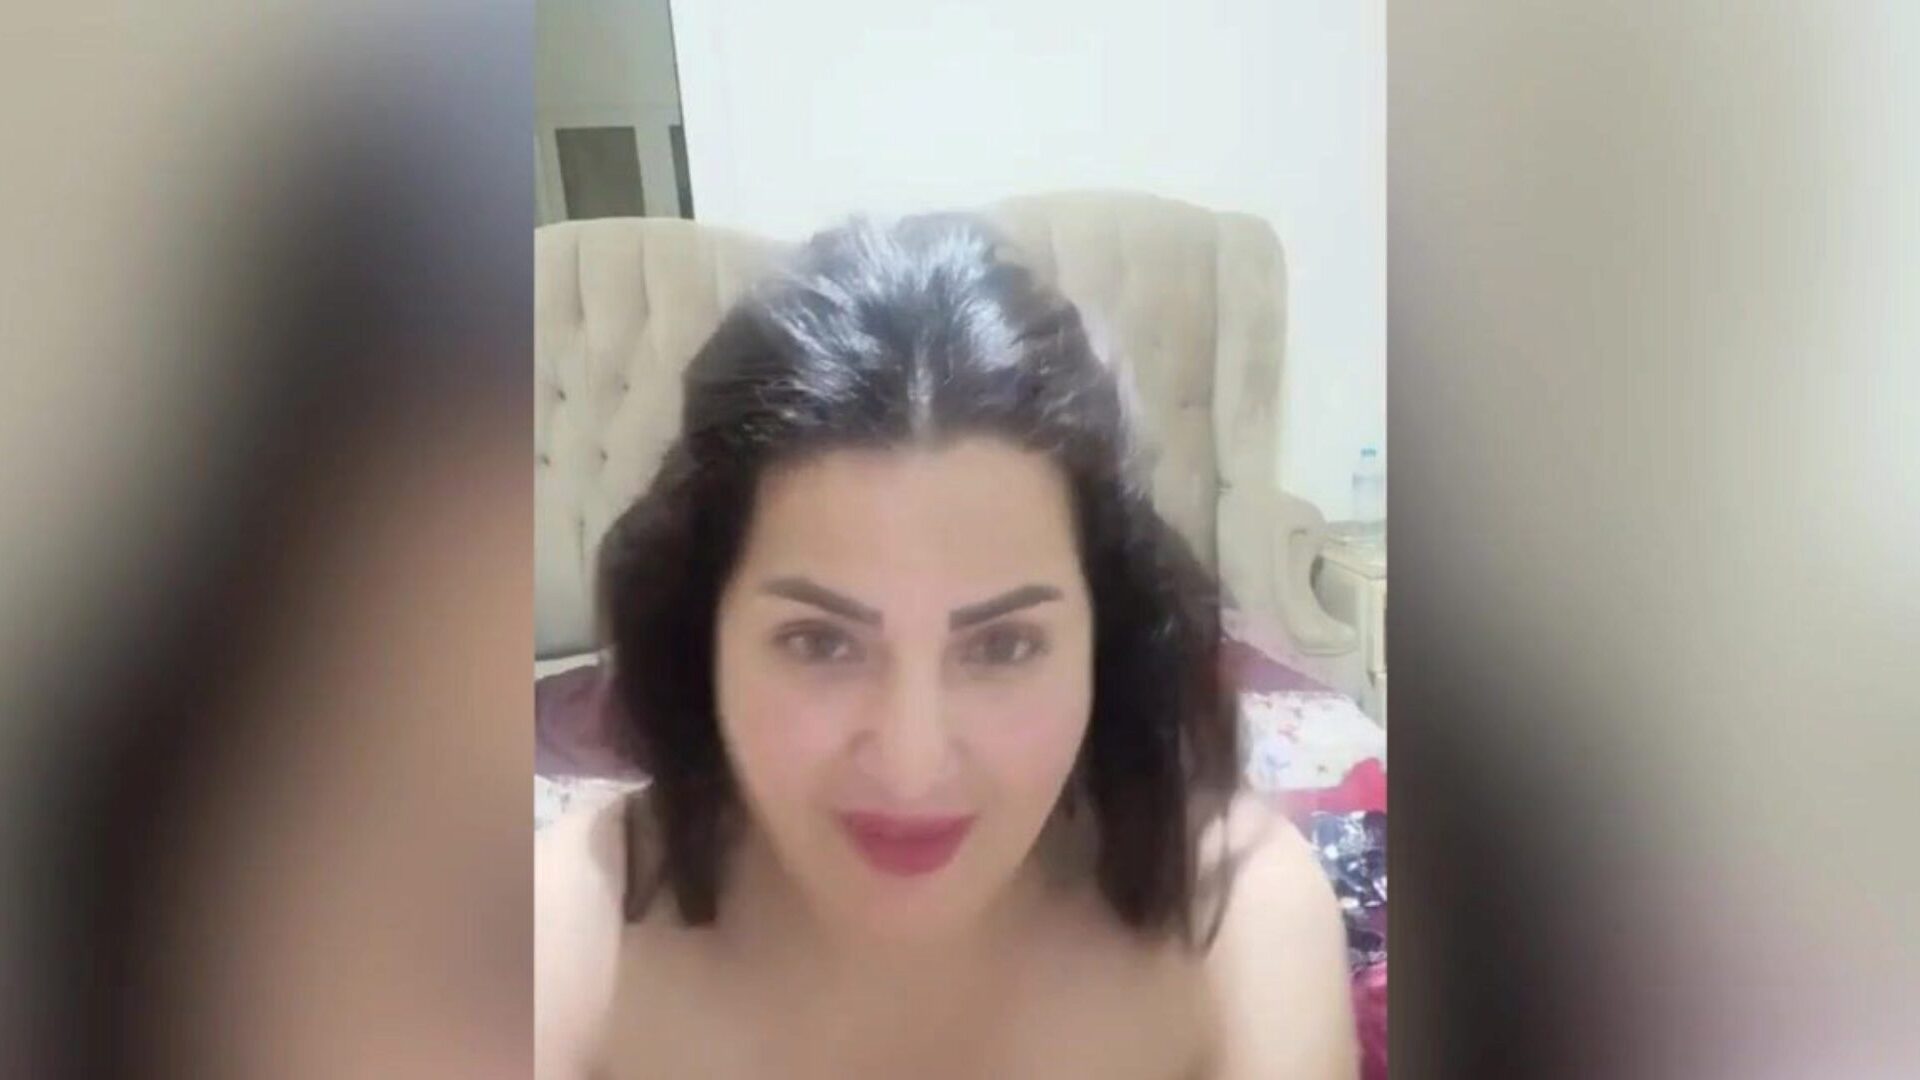 arab egyiptomi színésznő, fasz-a-thon sama el masry forró masrya naar egyiptomi arab orgia sama al-masry által, aki hawt asaaa, megmutatja neki nagy bazukáit és hawt nagy gazoo masrya naar